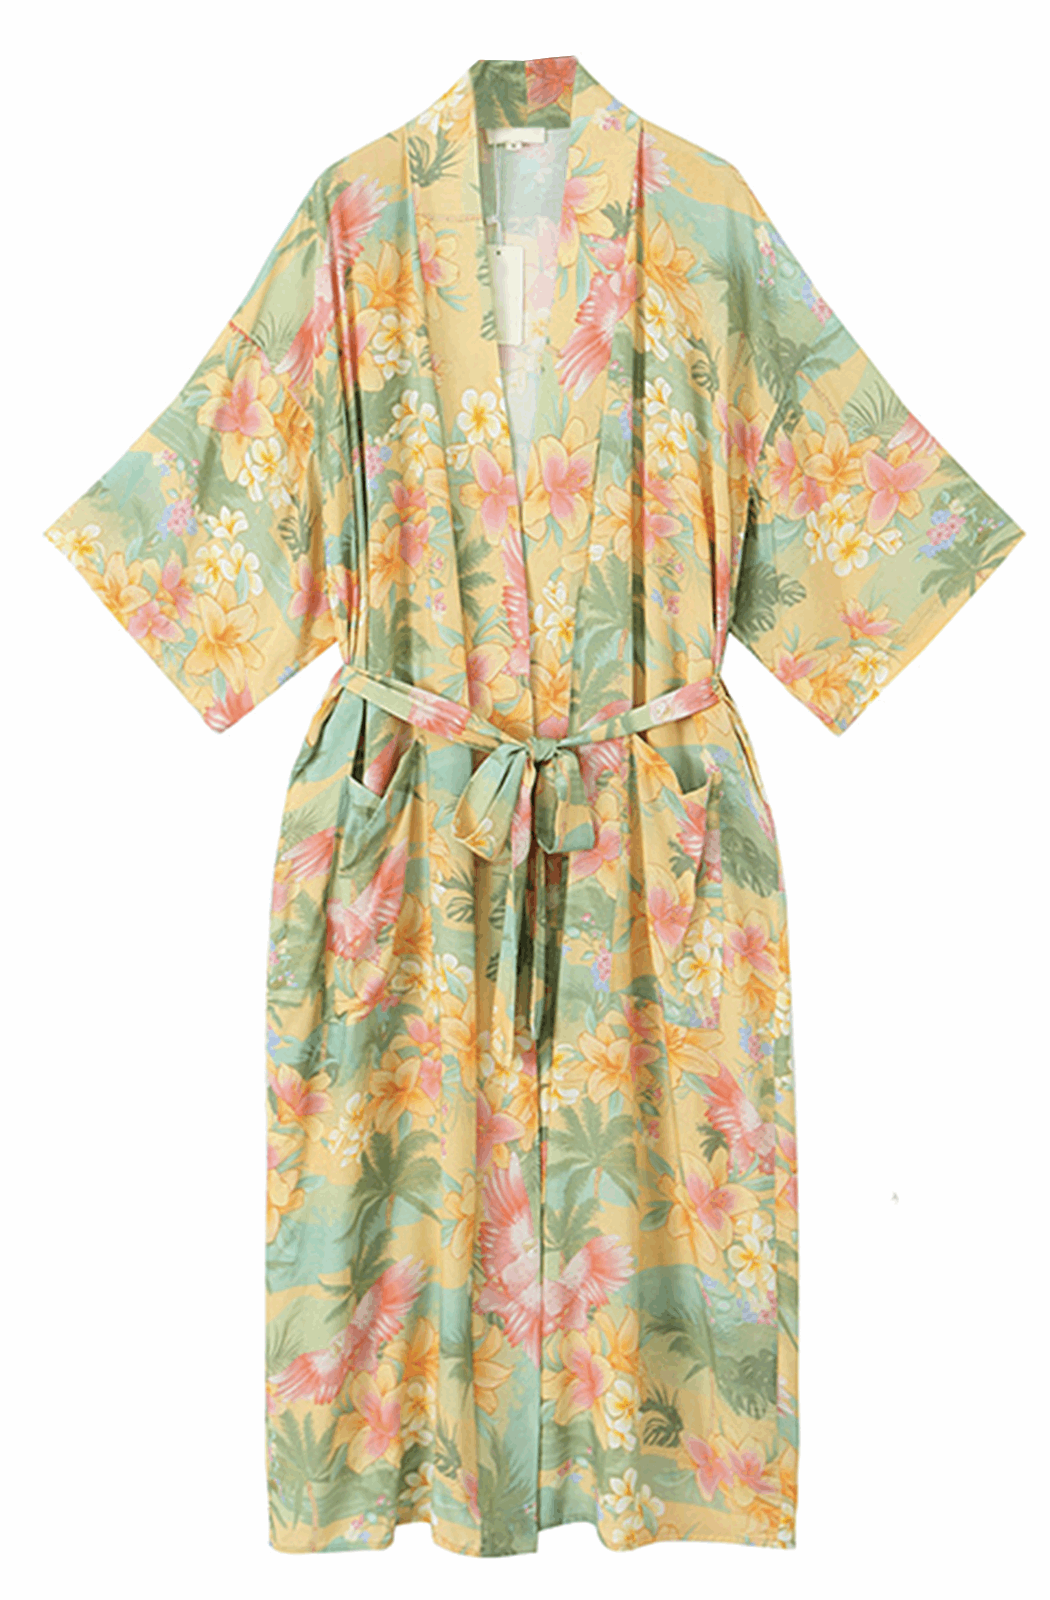 Maxi boho style floral kimono